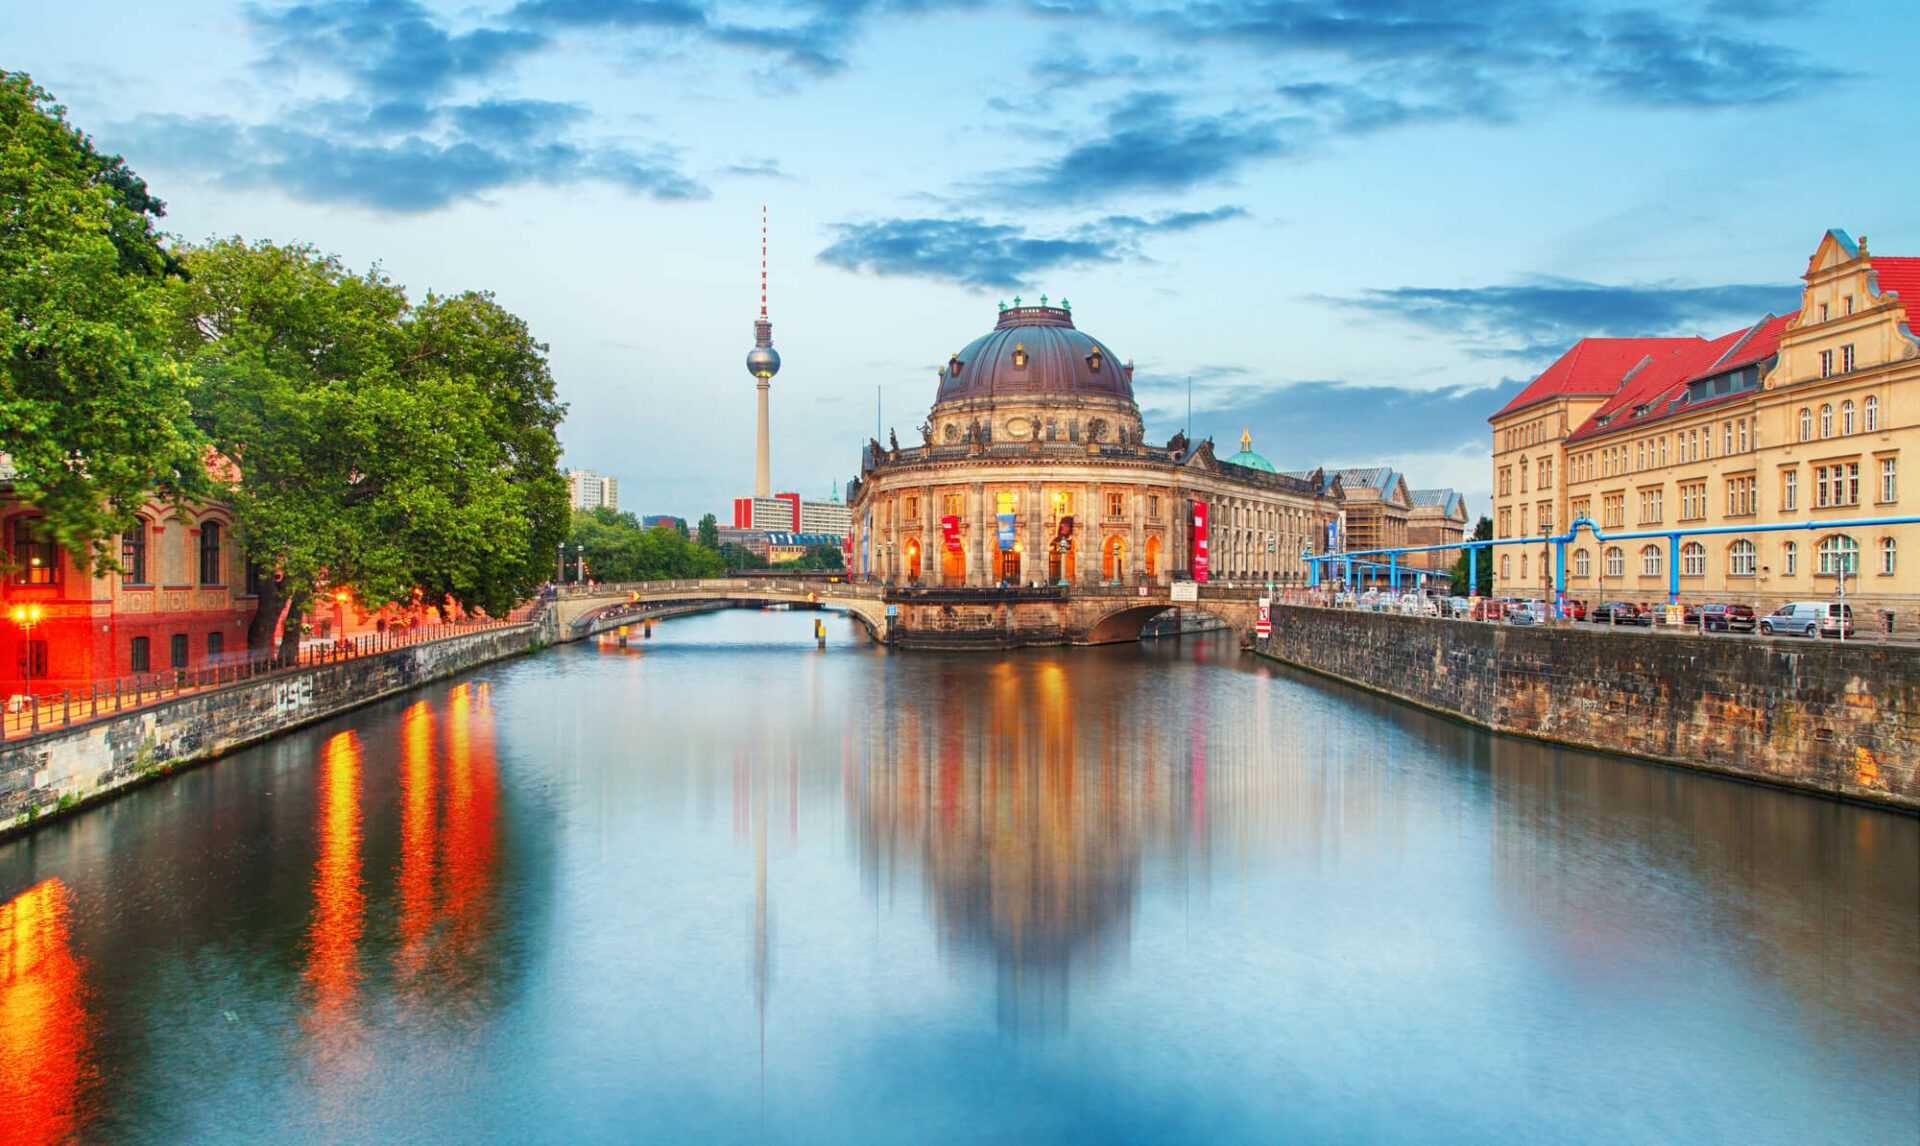 שייט בברלין - המדריך השלם לשייט על נהר השפרה בברלין